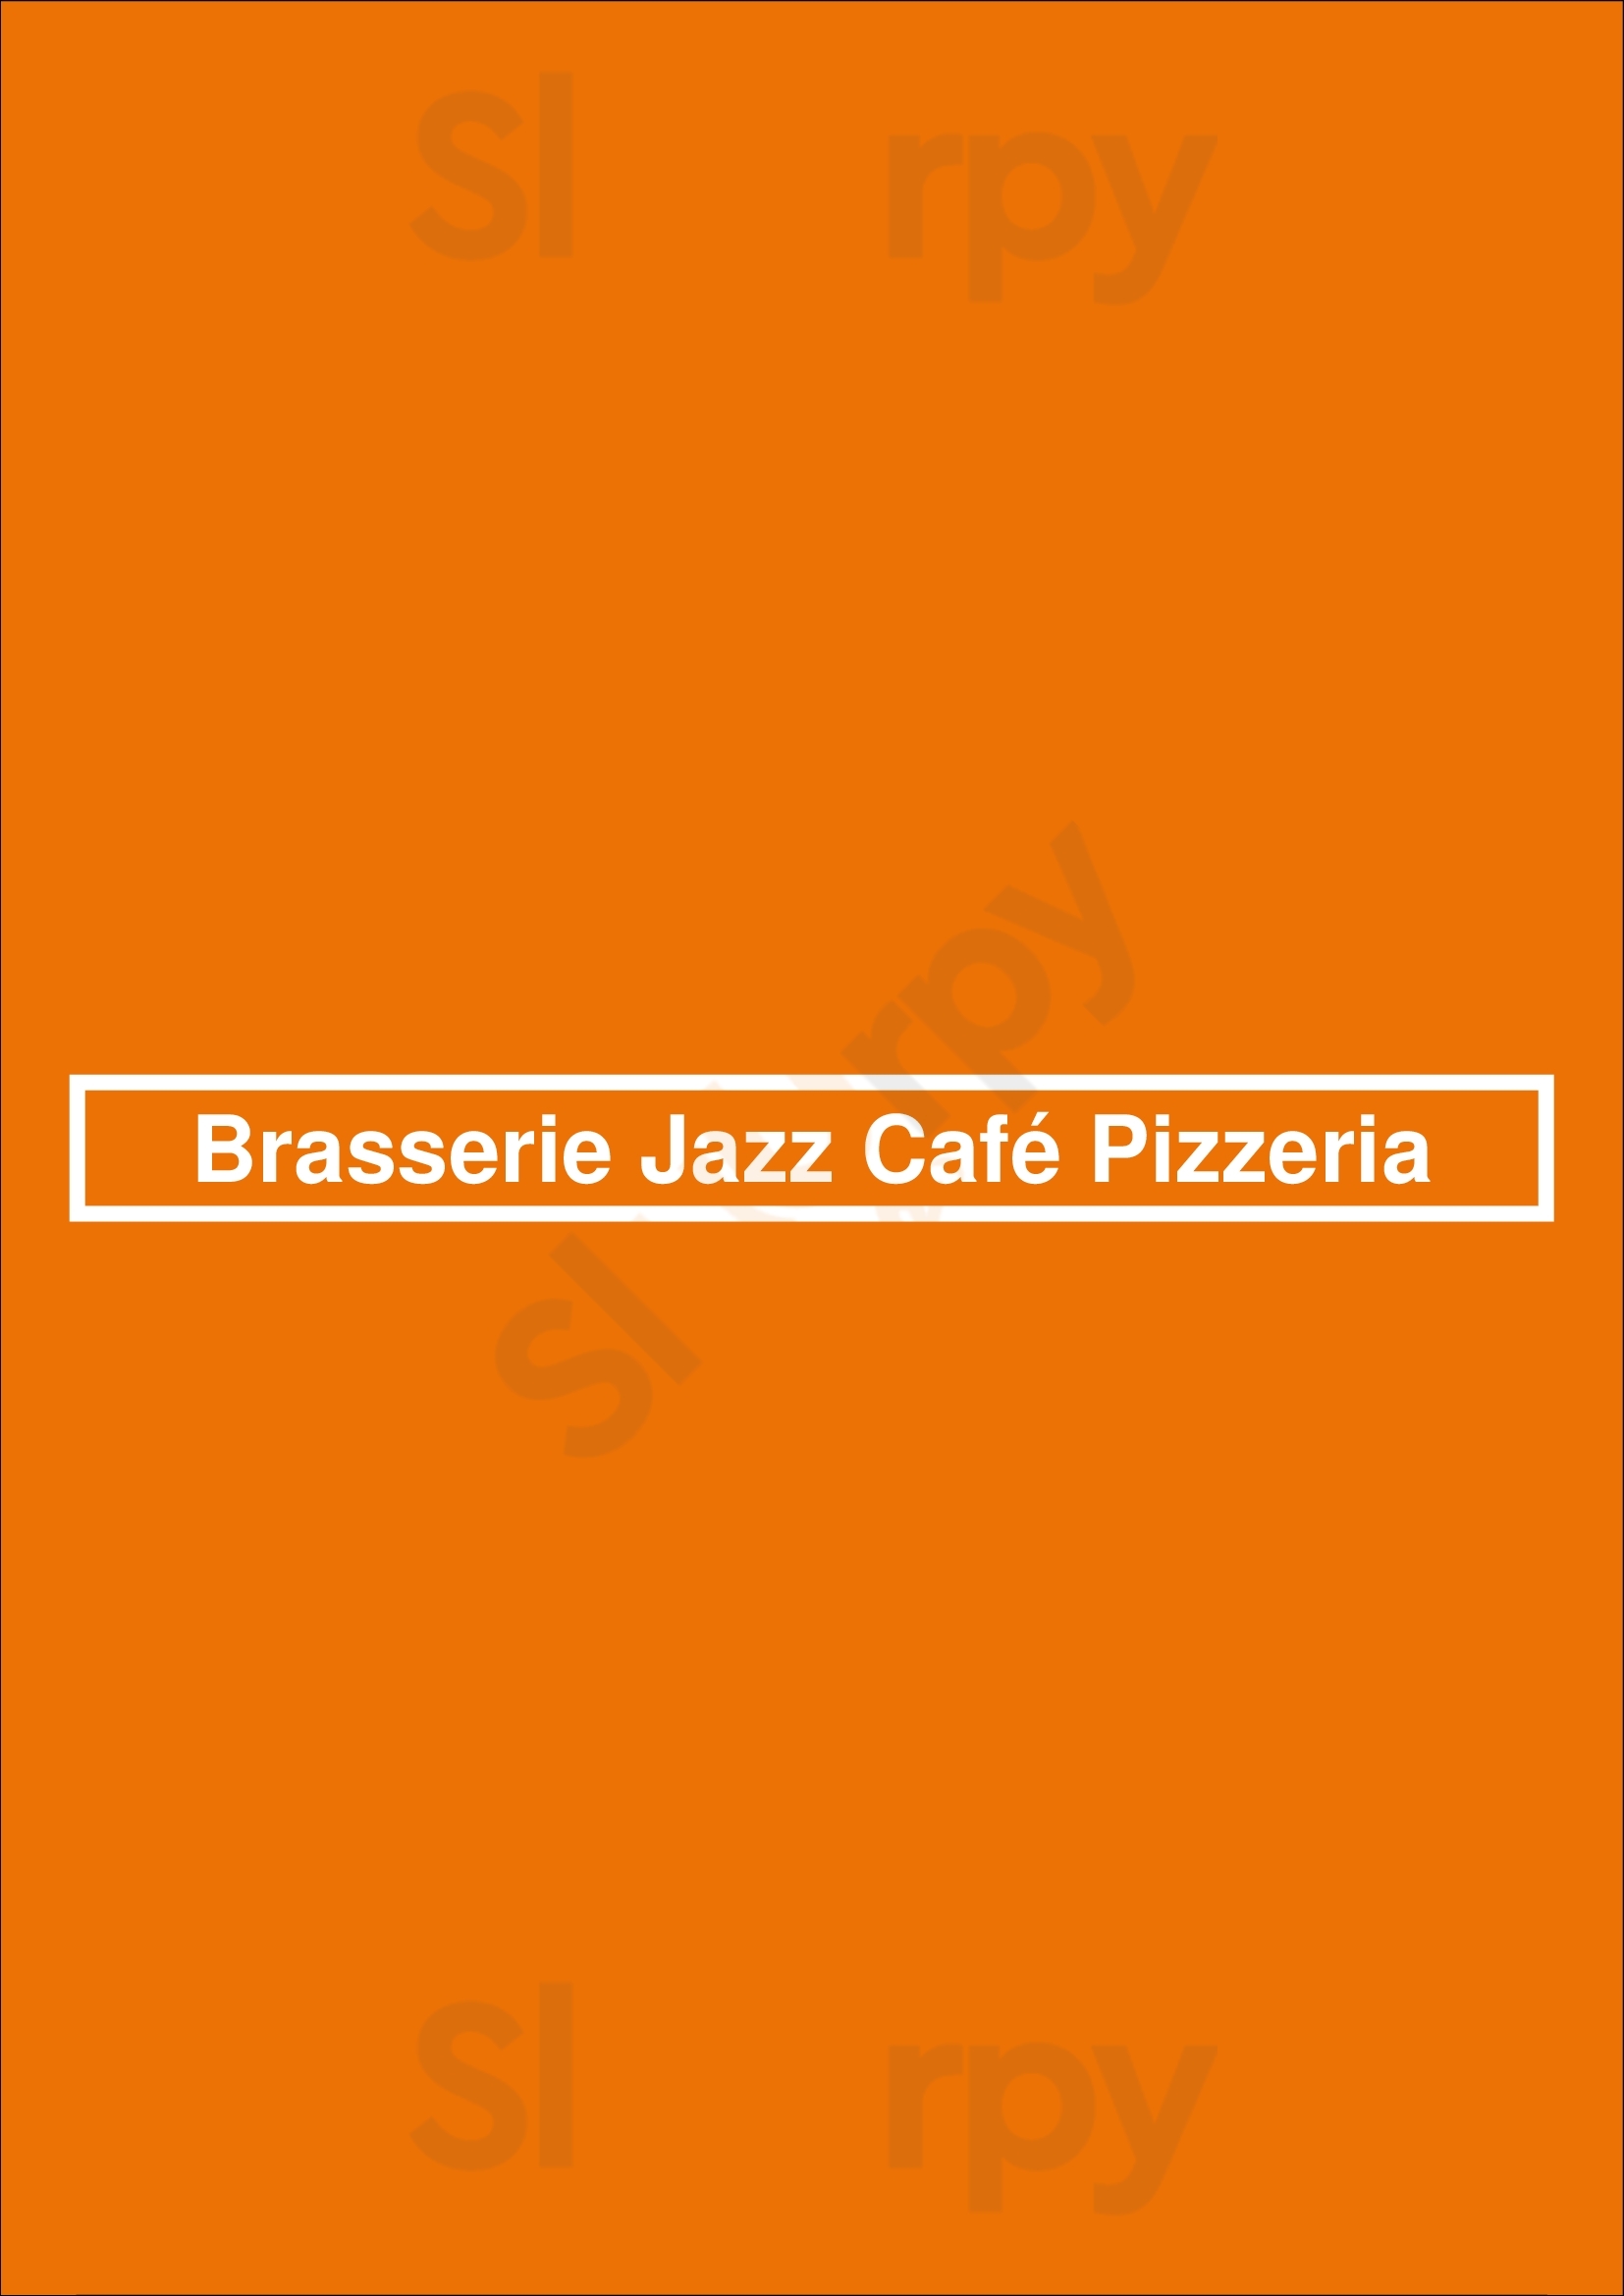 Brasserie Jazz Café Pizzeria Nice Menu - 1